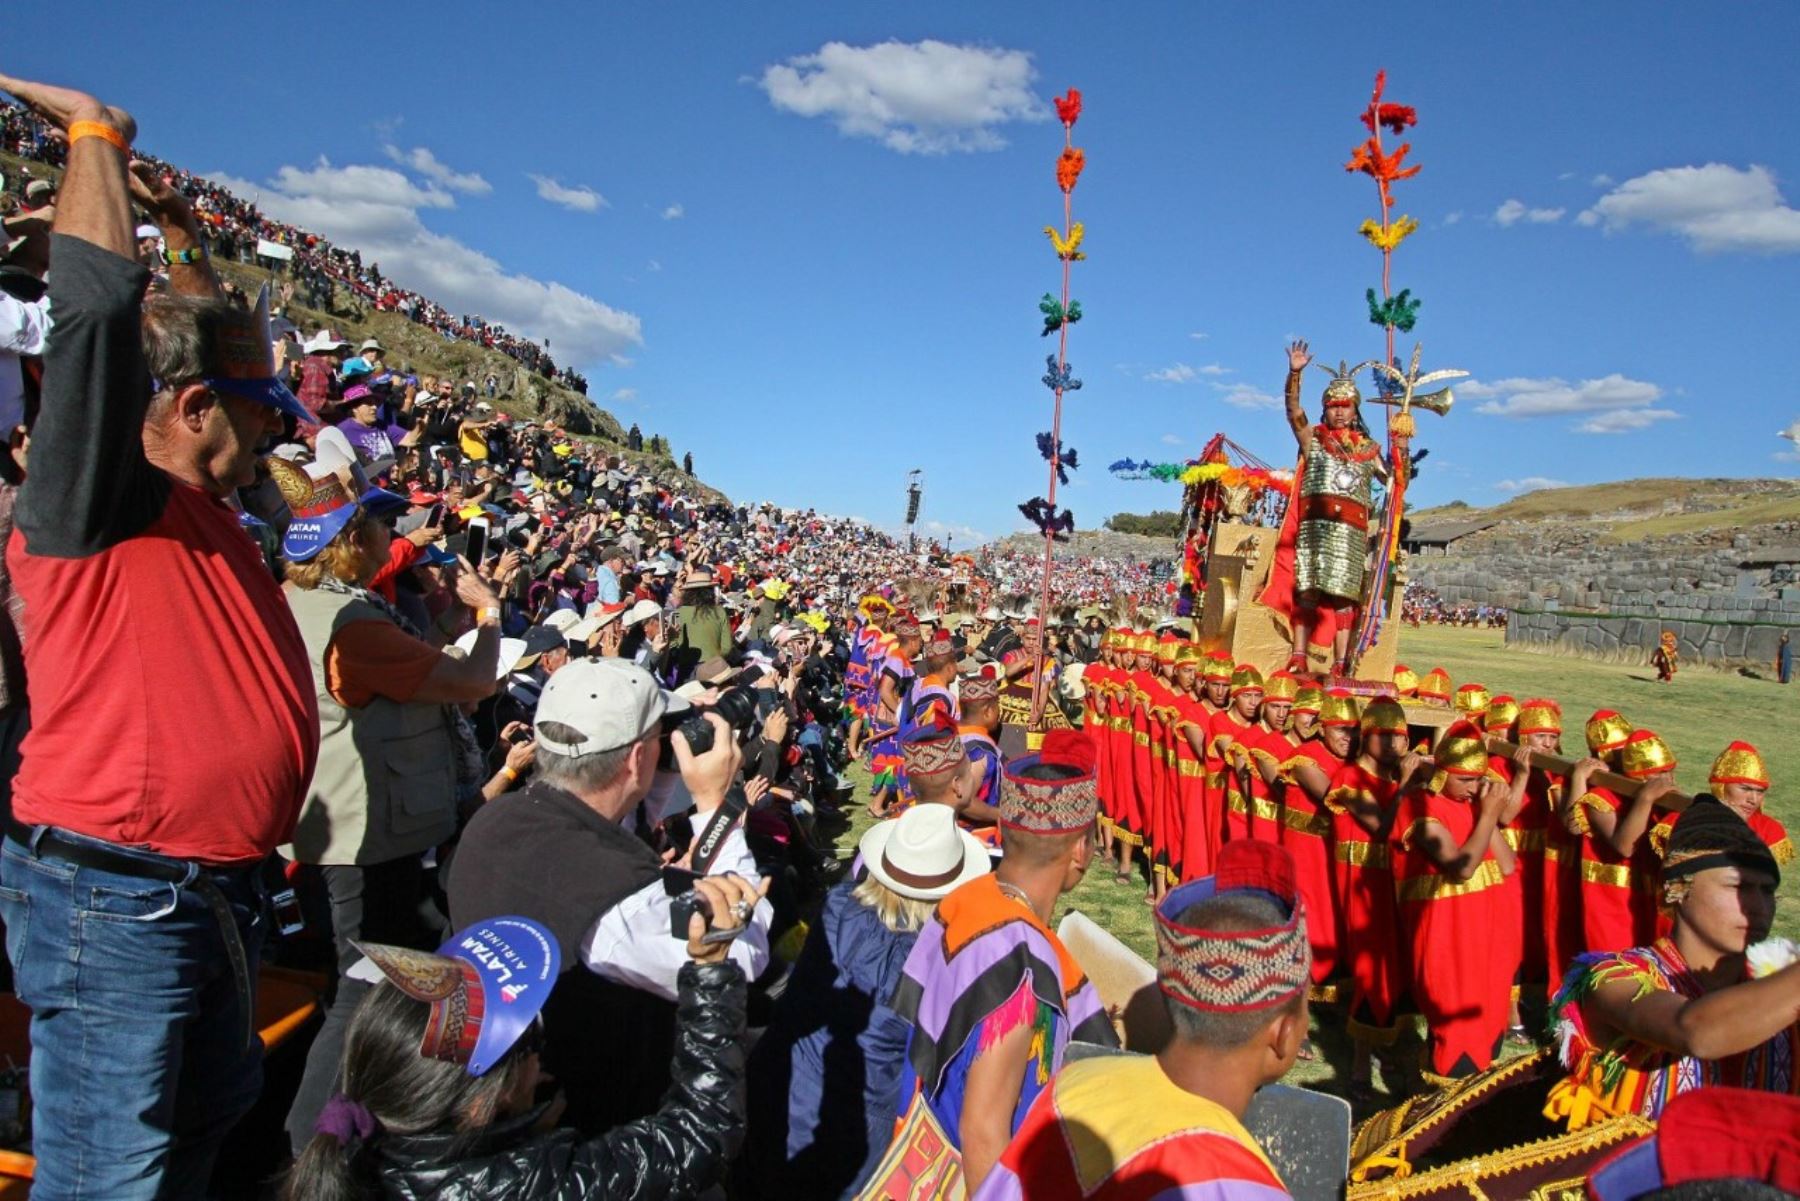 Con gran asistencia de público se escenifica el Intii Raymi en la explanada de Sacsayhuamán. ANDINA/Percy Hurtado Santillán